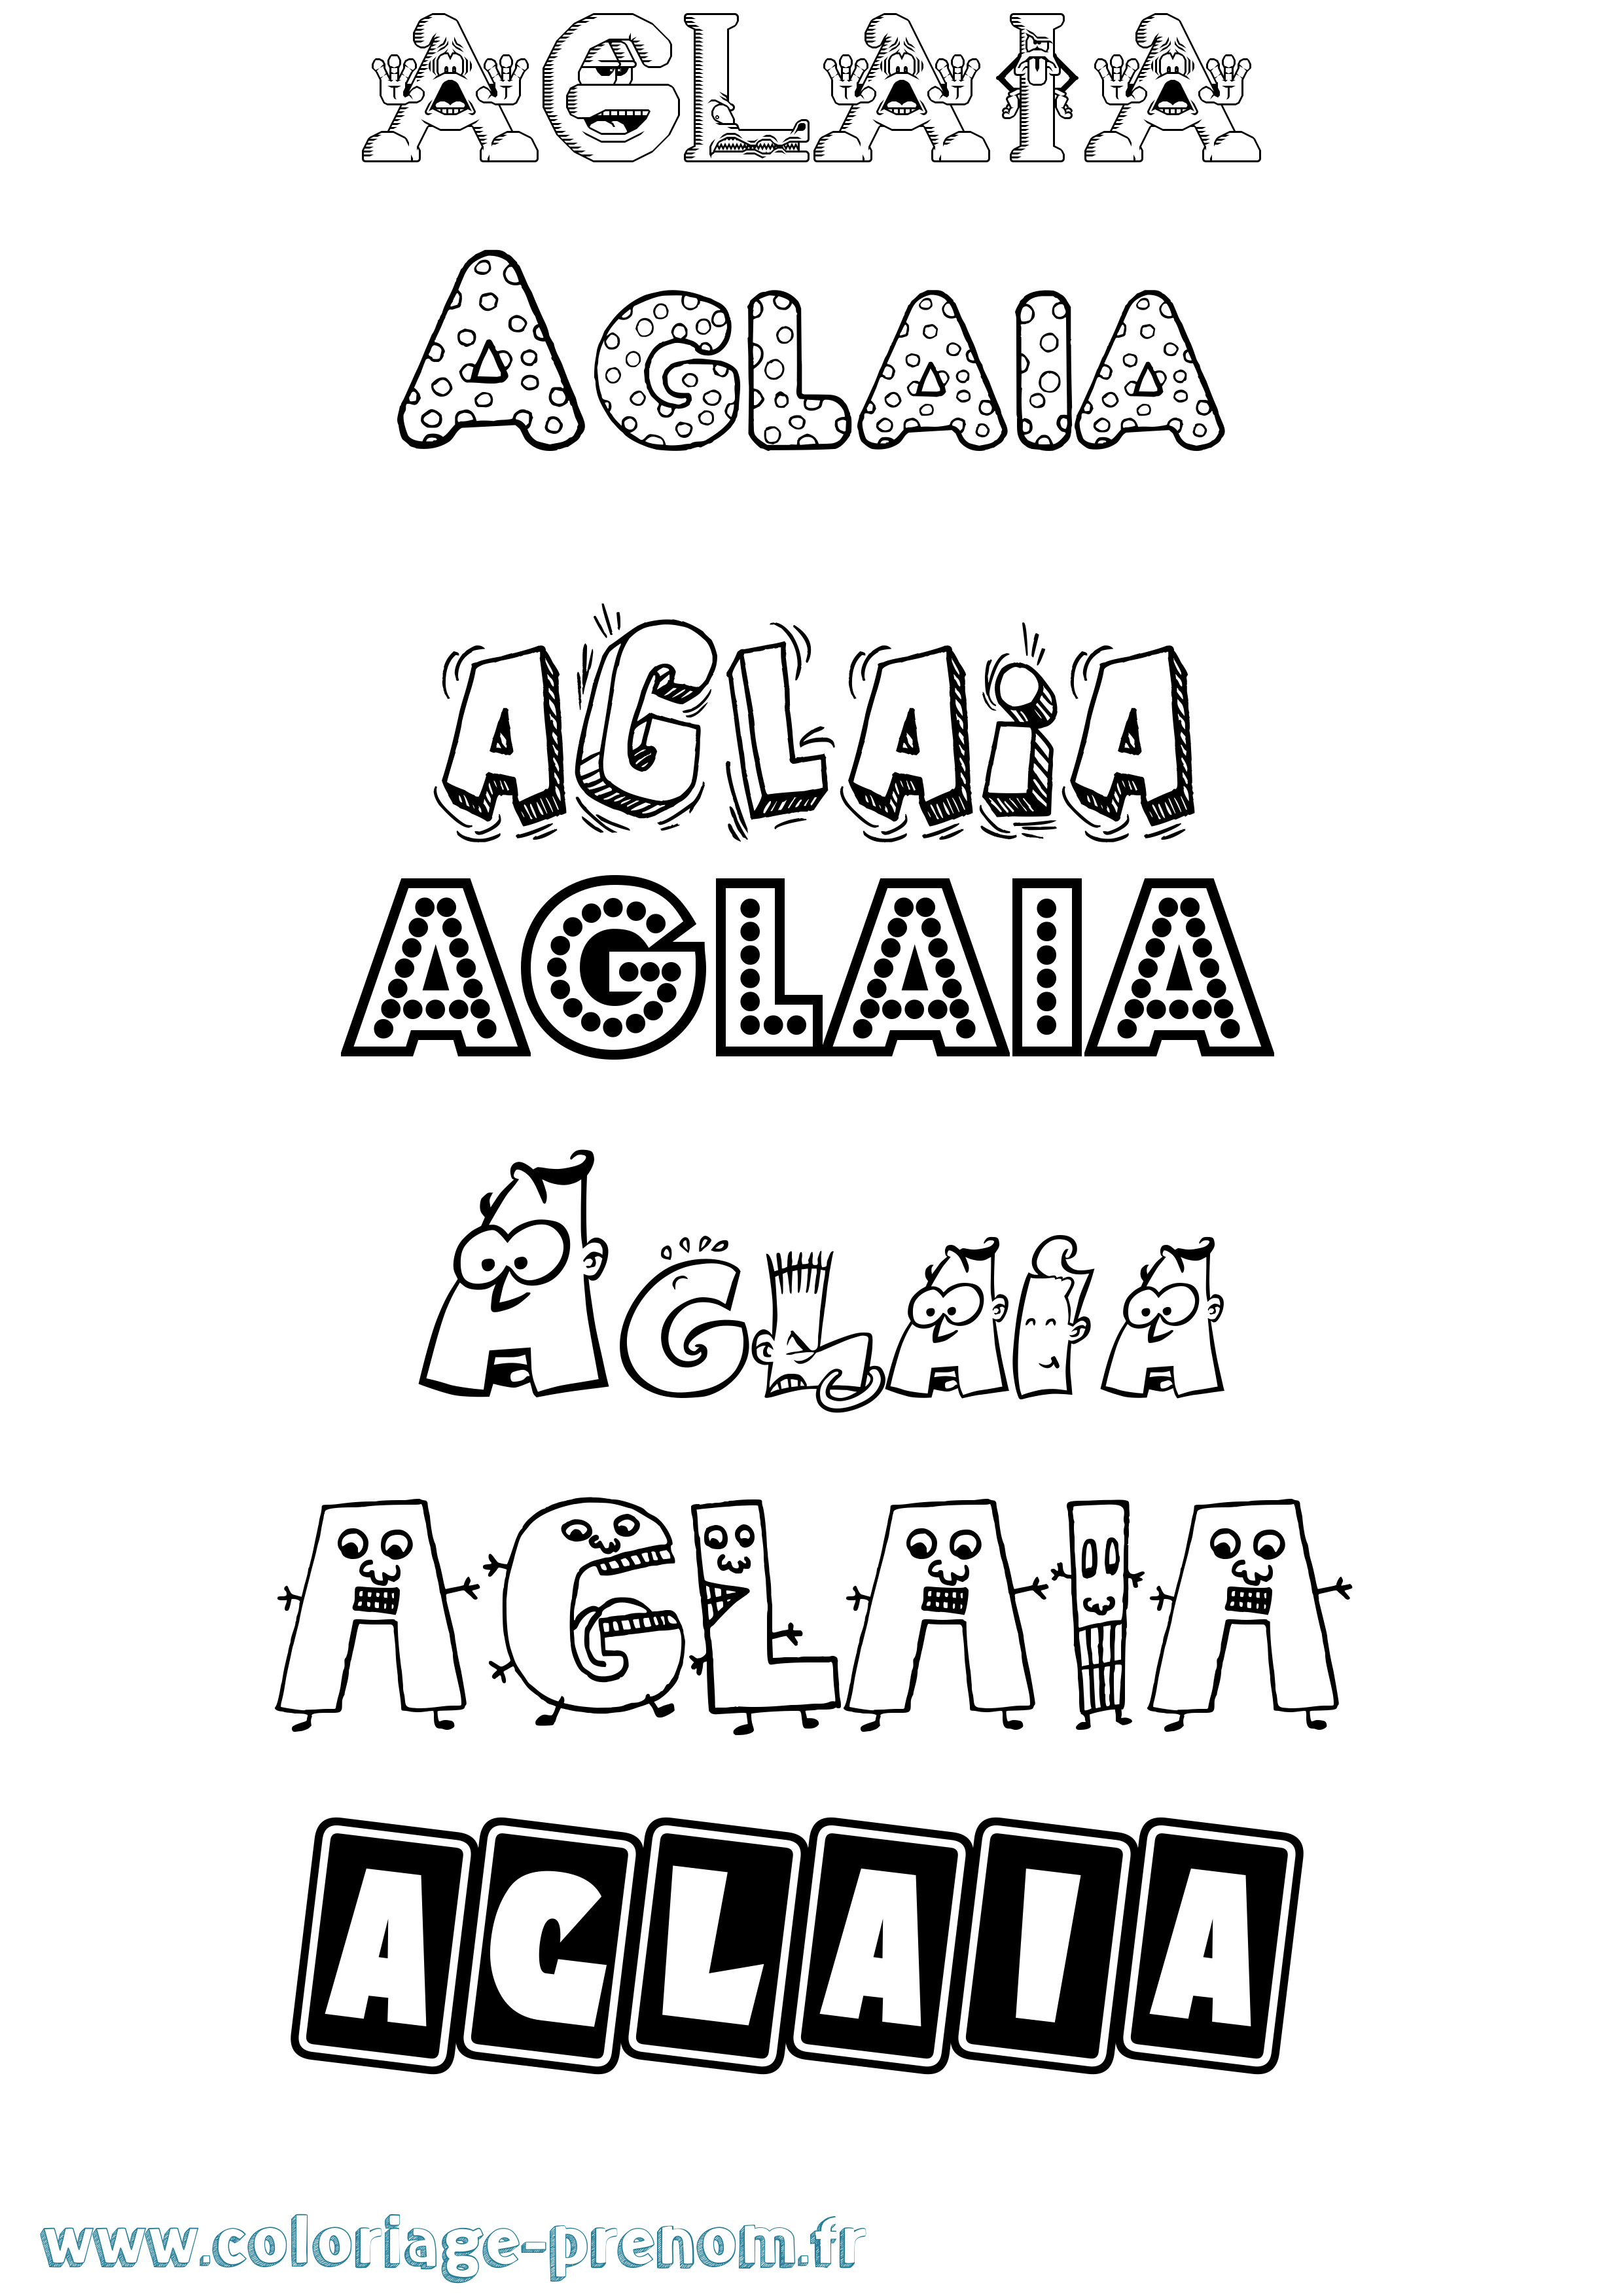 Coloriage prénom Aglaia Fun